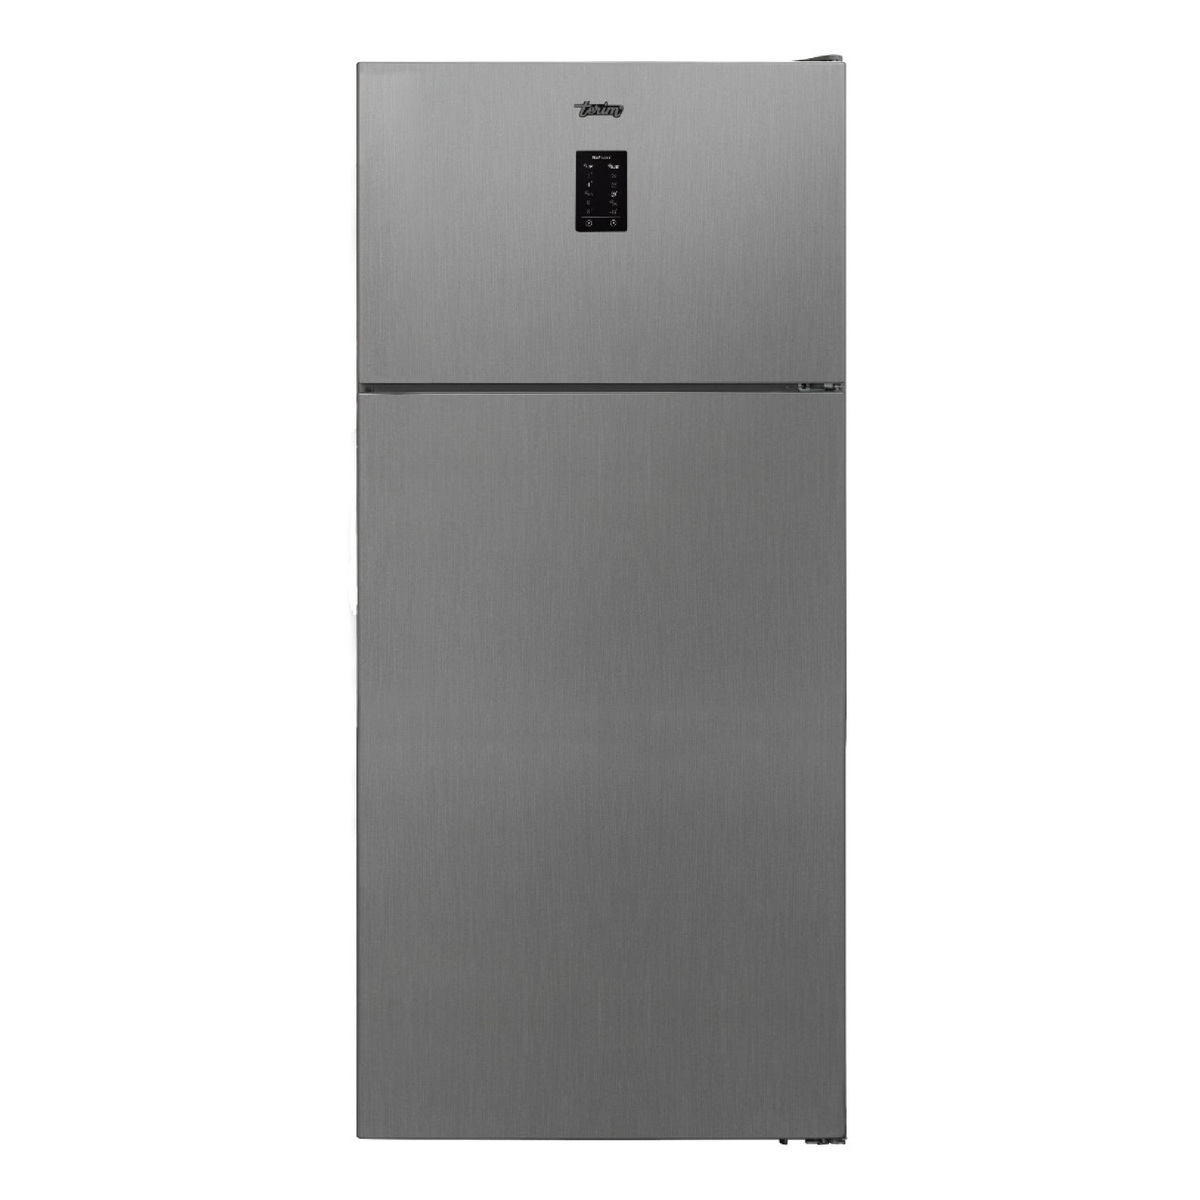 Terim Top Freezer Double Door Refrigerator, 800 L, Silver, TERR800VS